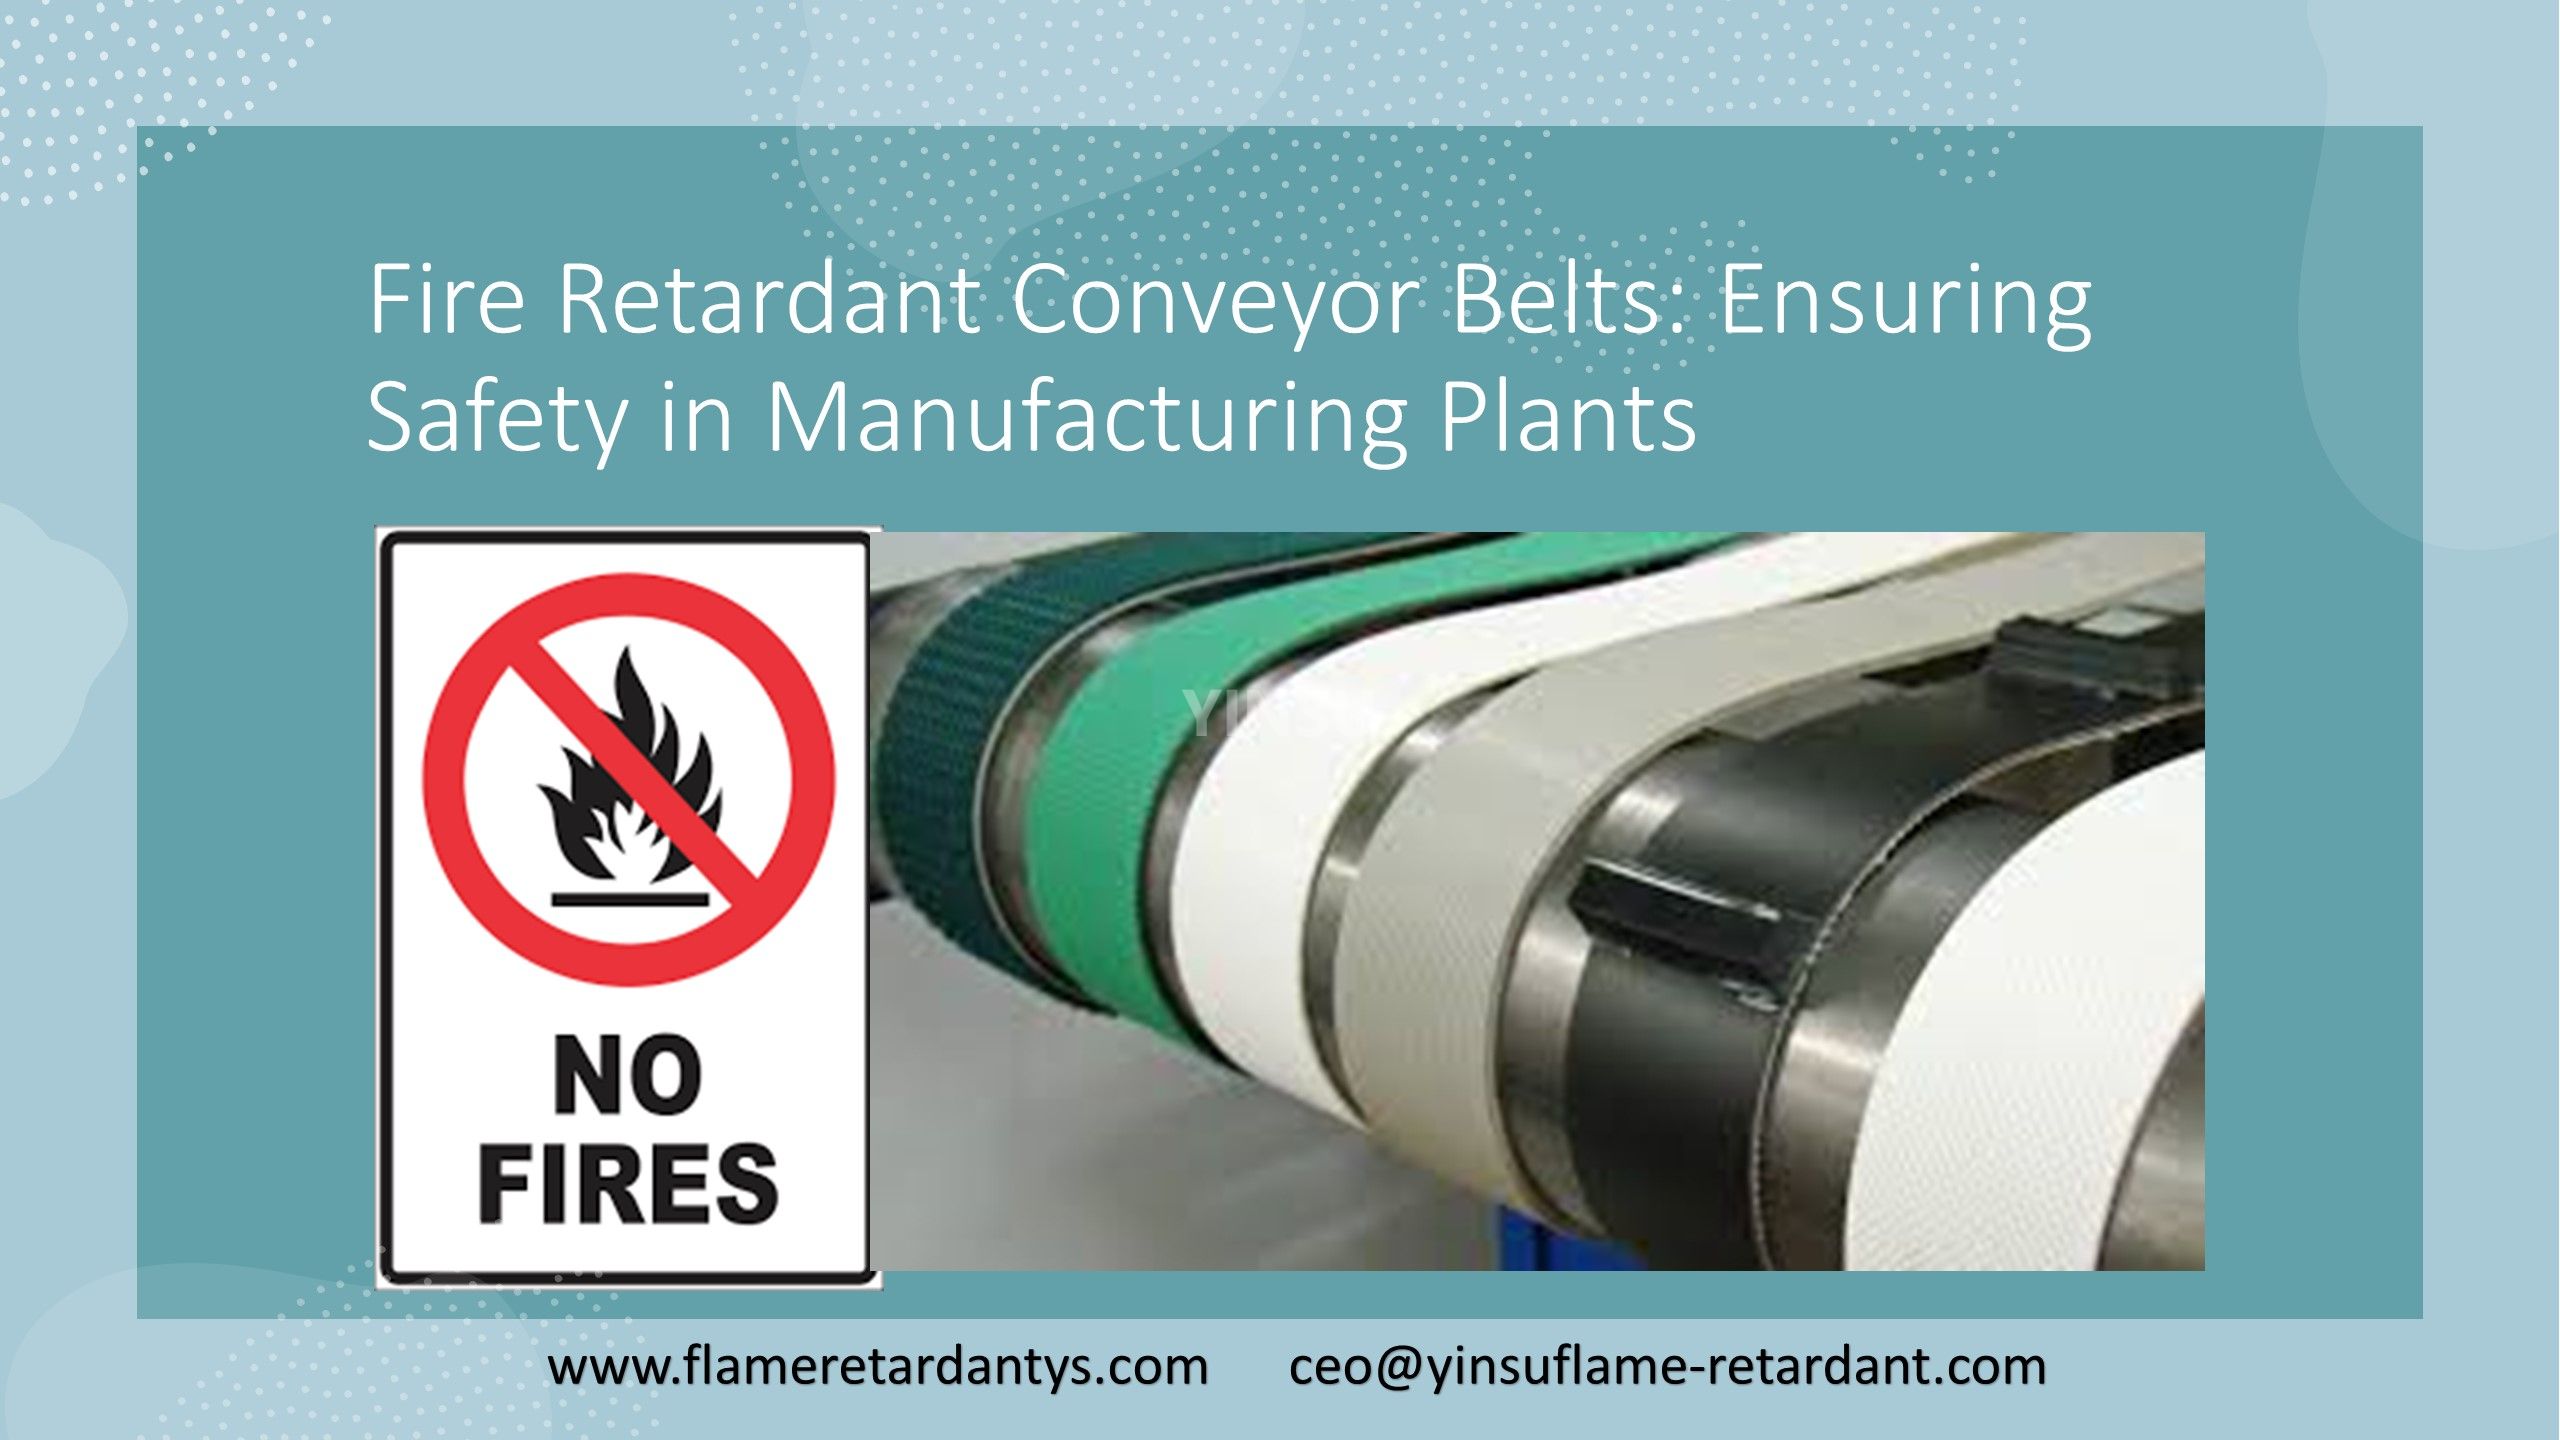 10.27 Огнезащитные конвейерные ленты, обеспечивающие безопасность на производственных предприятиях